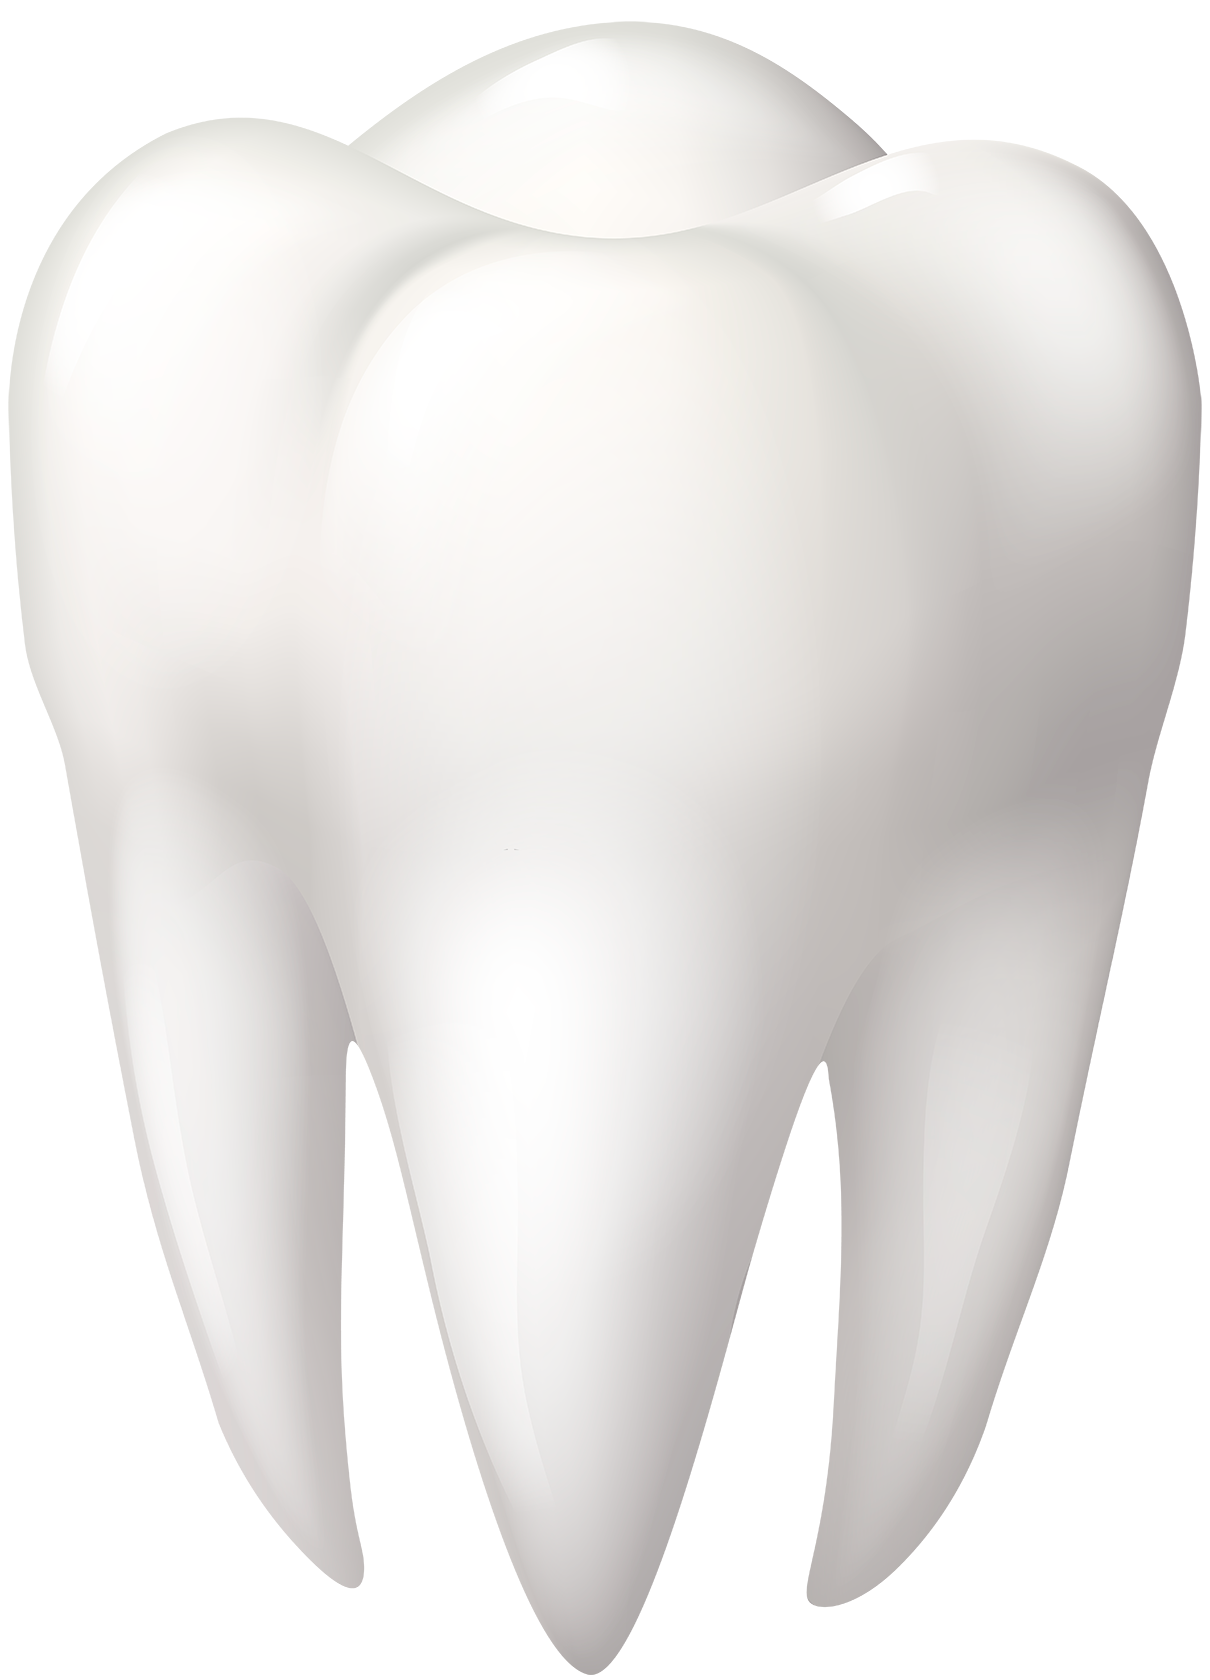 Закаленный зуб. Зуб. Здоровые зубы. Белые зубы. Объемный зуб.